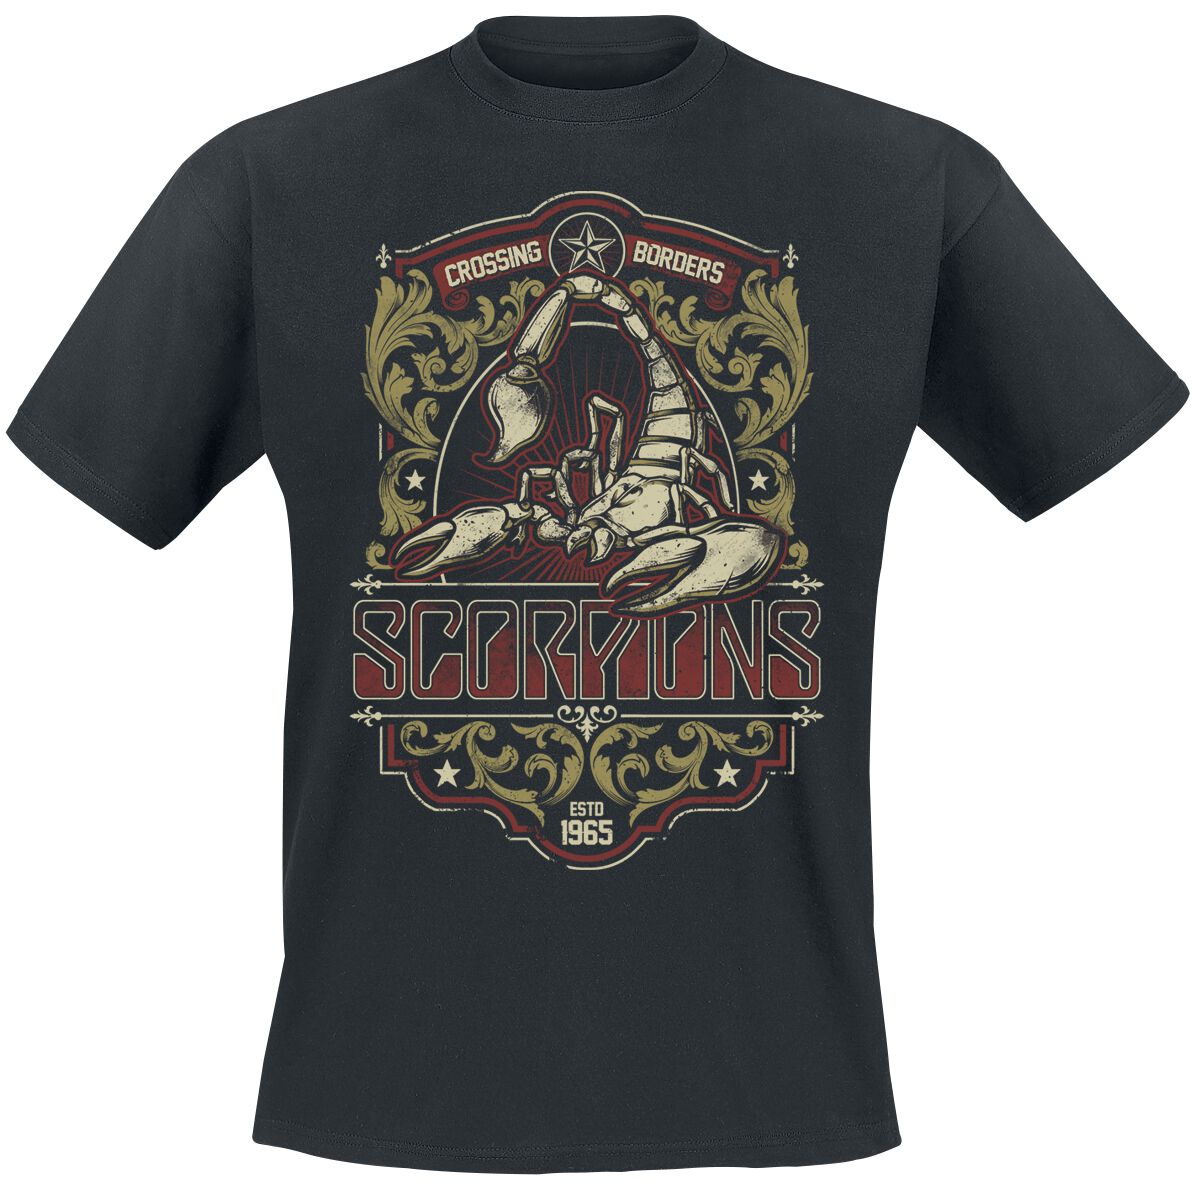 Scorpions T-Shirt - Wind Of Change - XXL - für Männer - Größe XXL - schwarz  - Lizenziertes Merchandise!